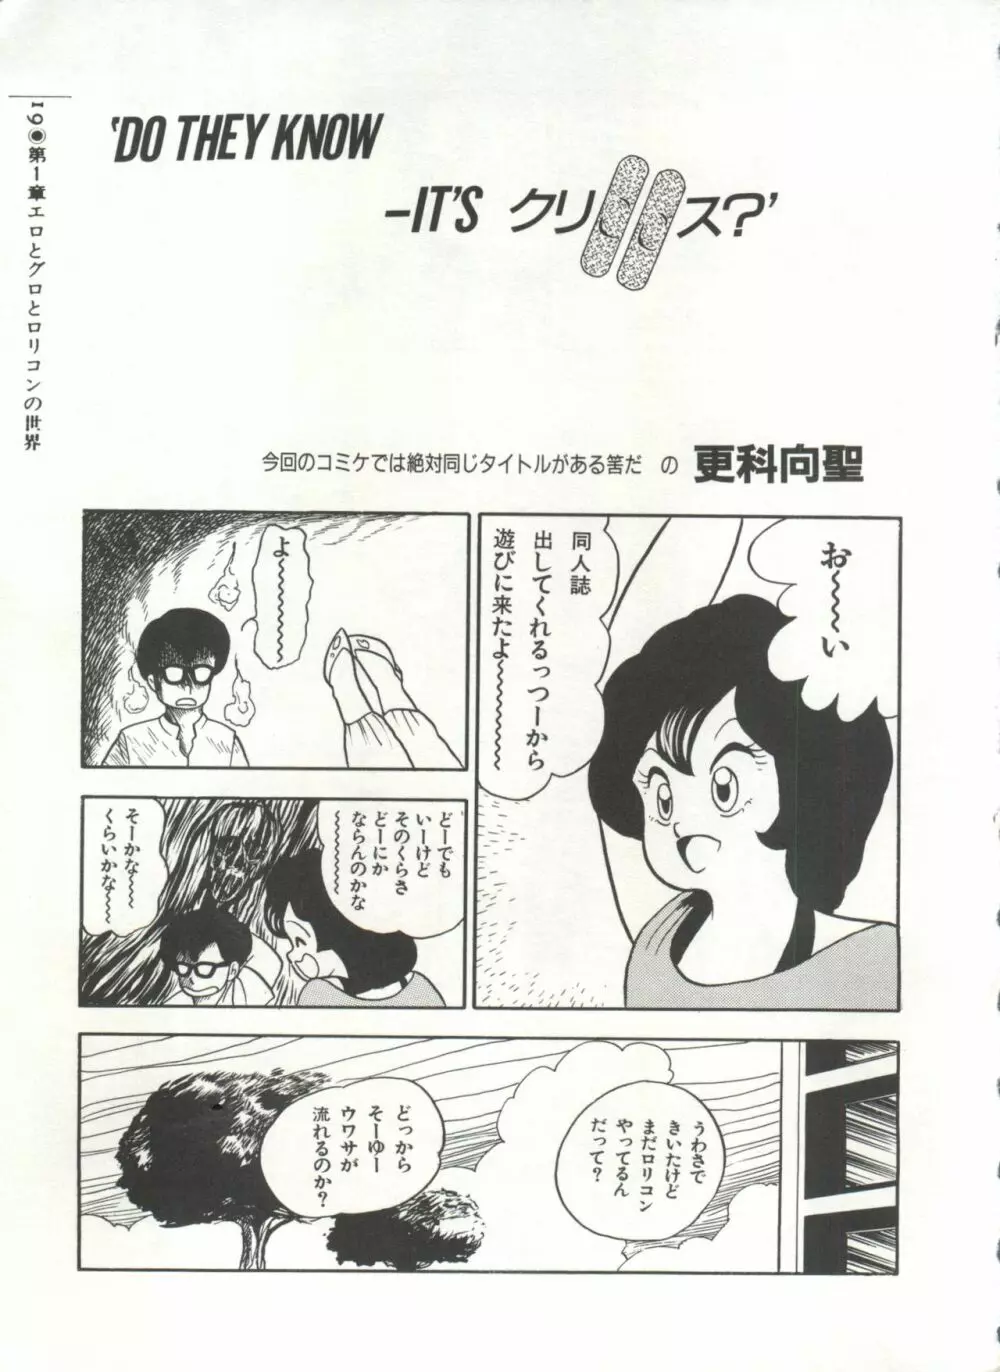 [Anthology] 美少女症候群(2) Lolita syndrome (よろず) 22ページ